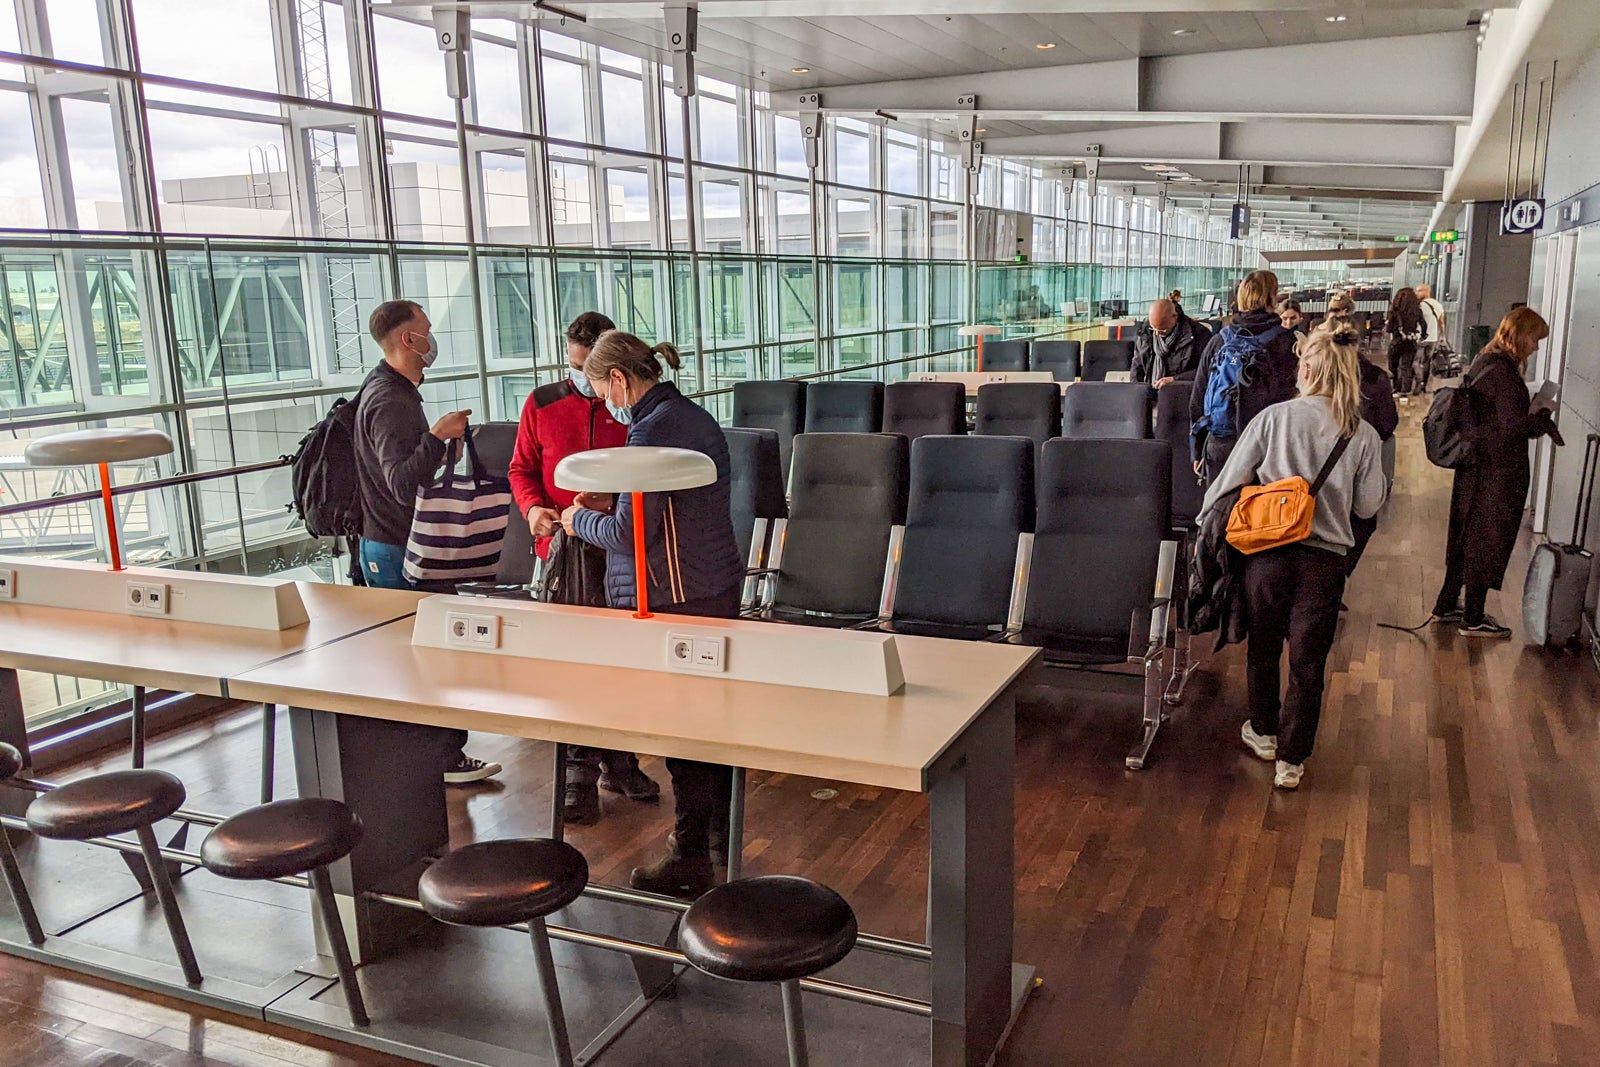 Boarding Finnair business class flight